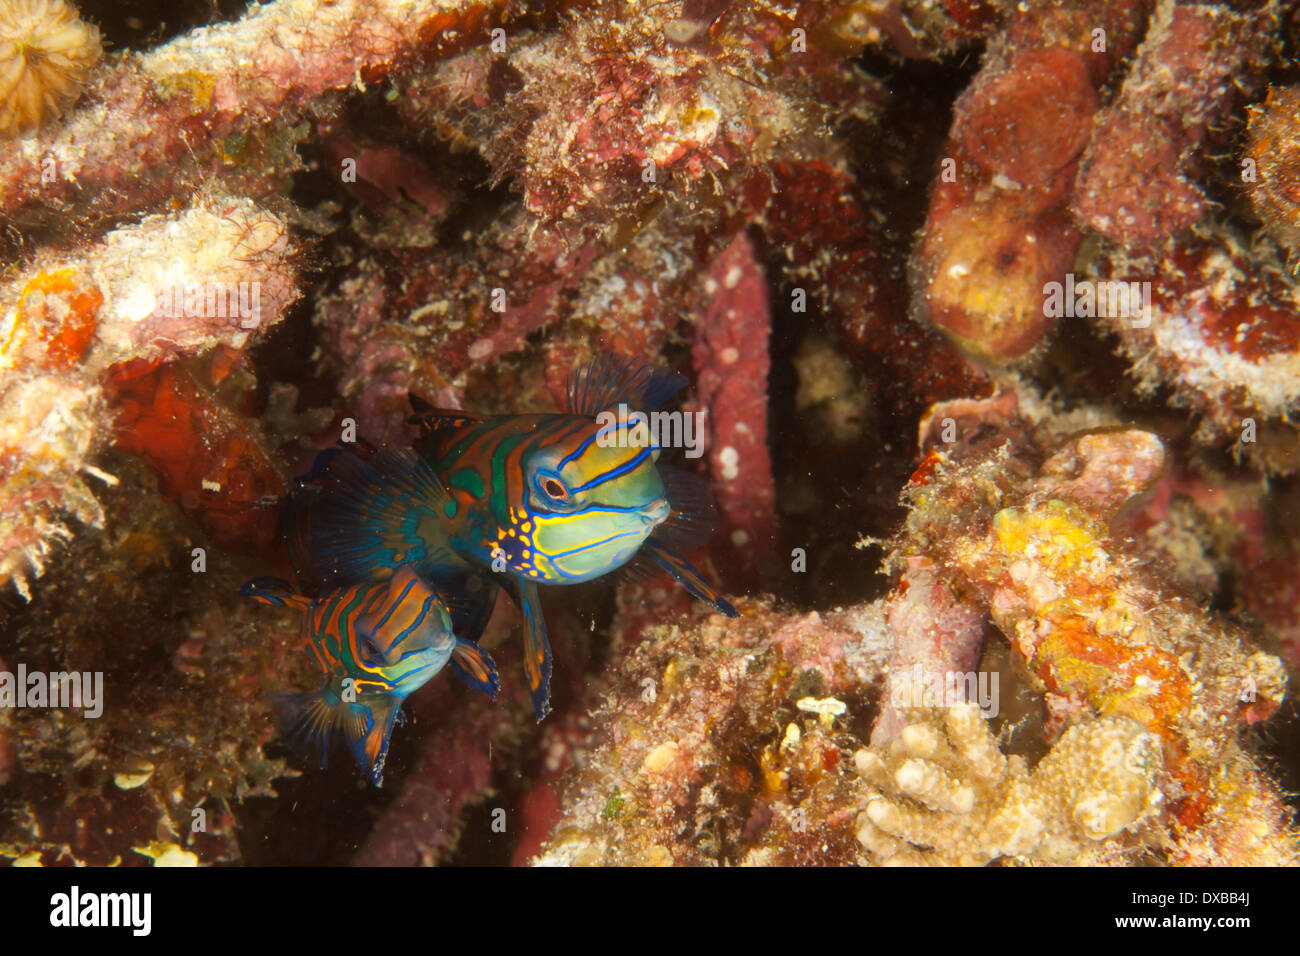 Mandarinfish, Synchiropus splendidus, Raja Ampat, Indonesia Stock Photo